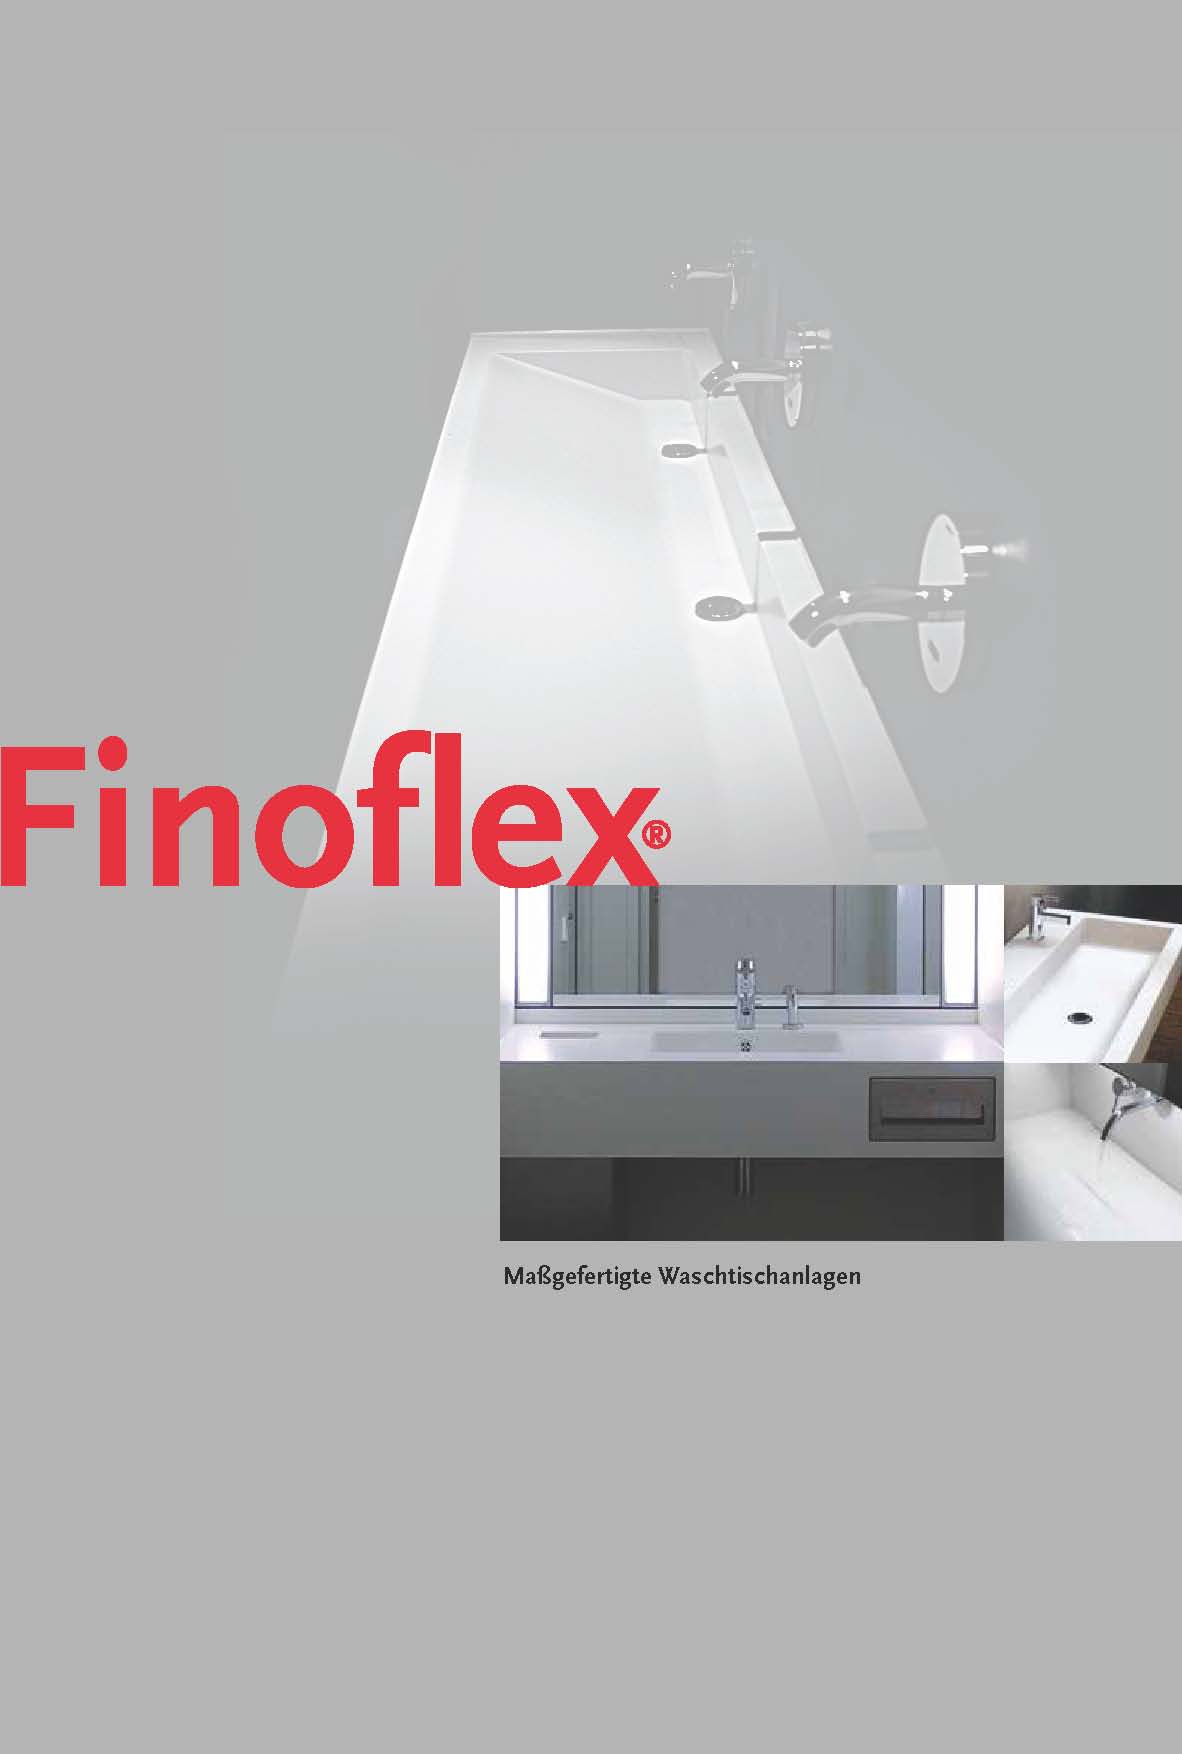 Finoflex Waschrinnen